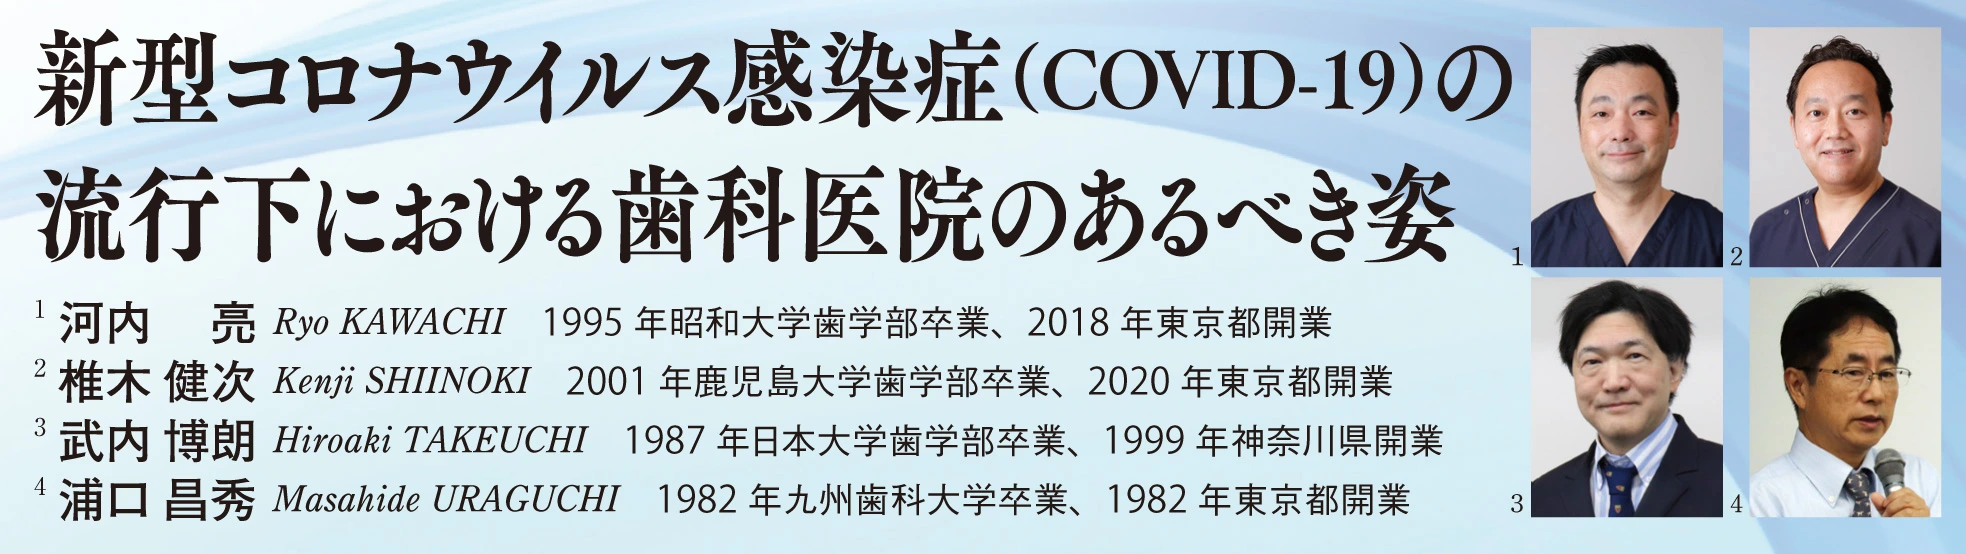 新型コロナウイルス感染症COVID-19の流行下における歯科医院のあるべき姿 著者近影